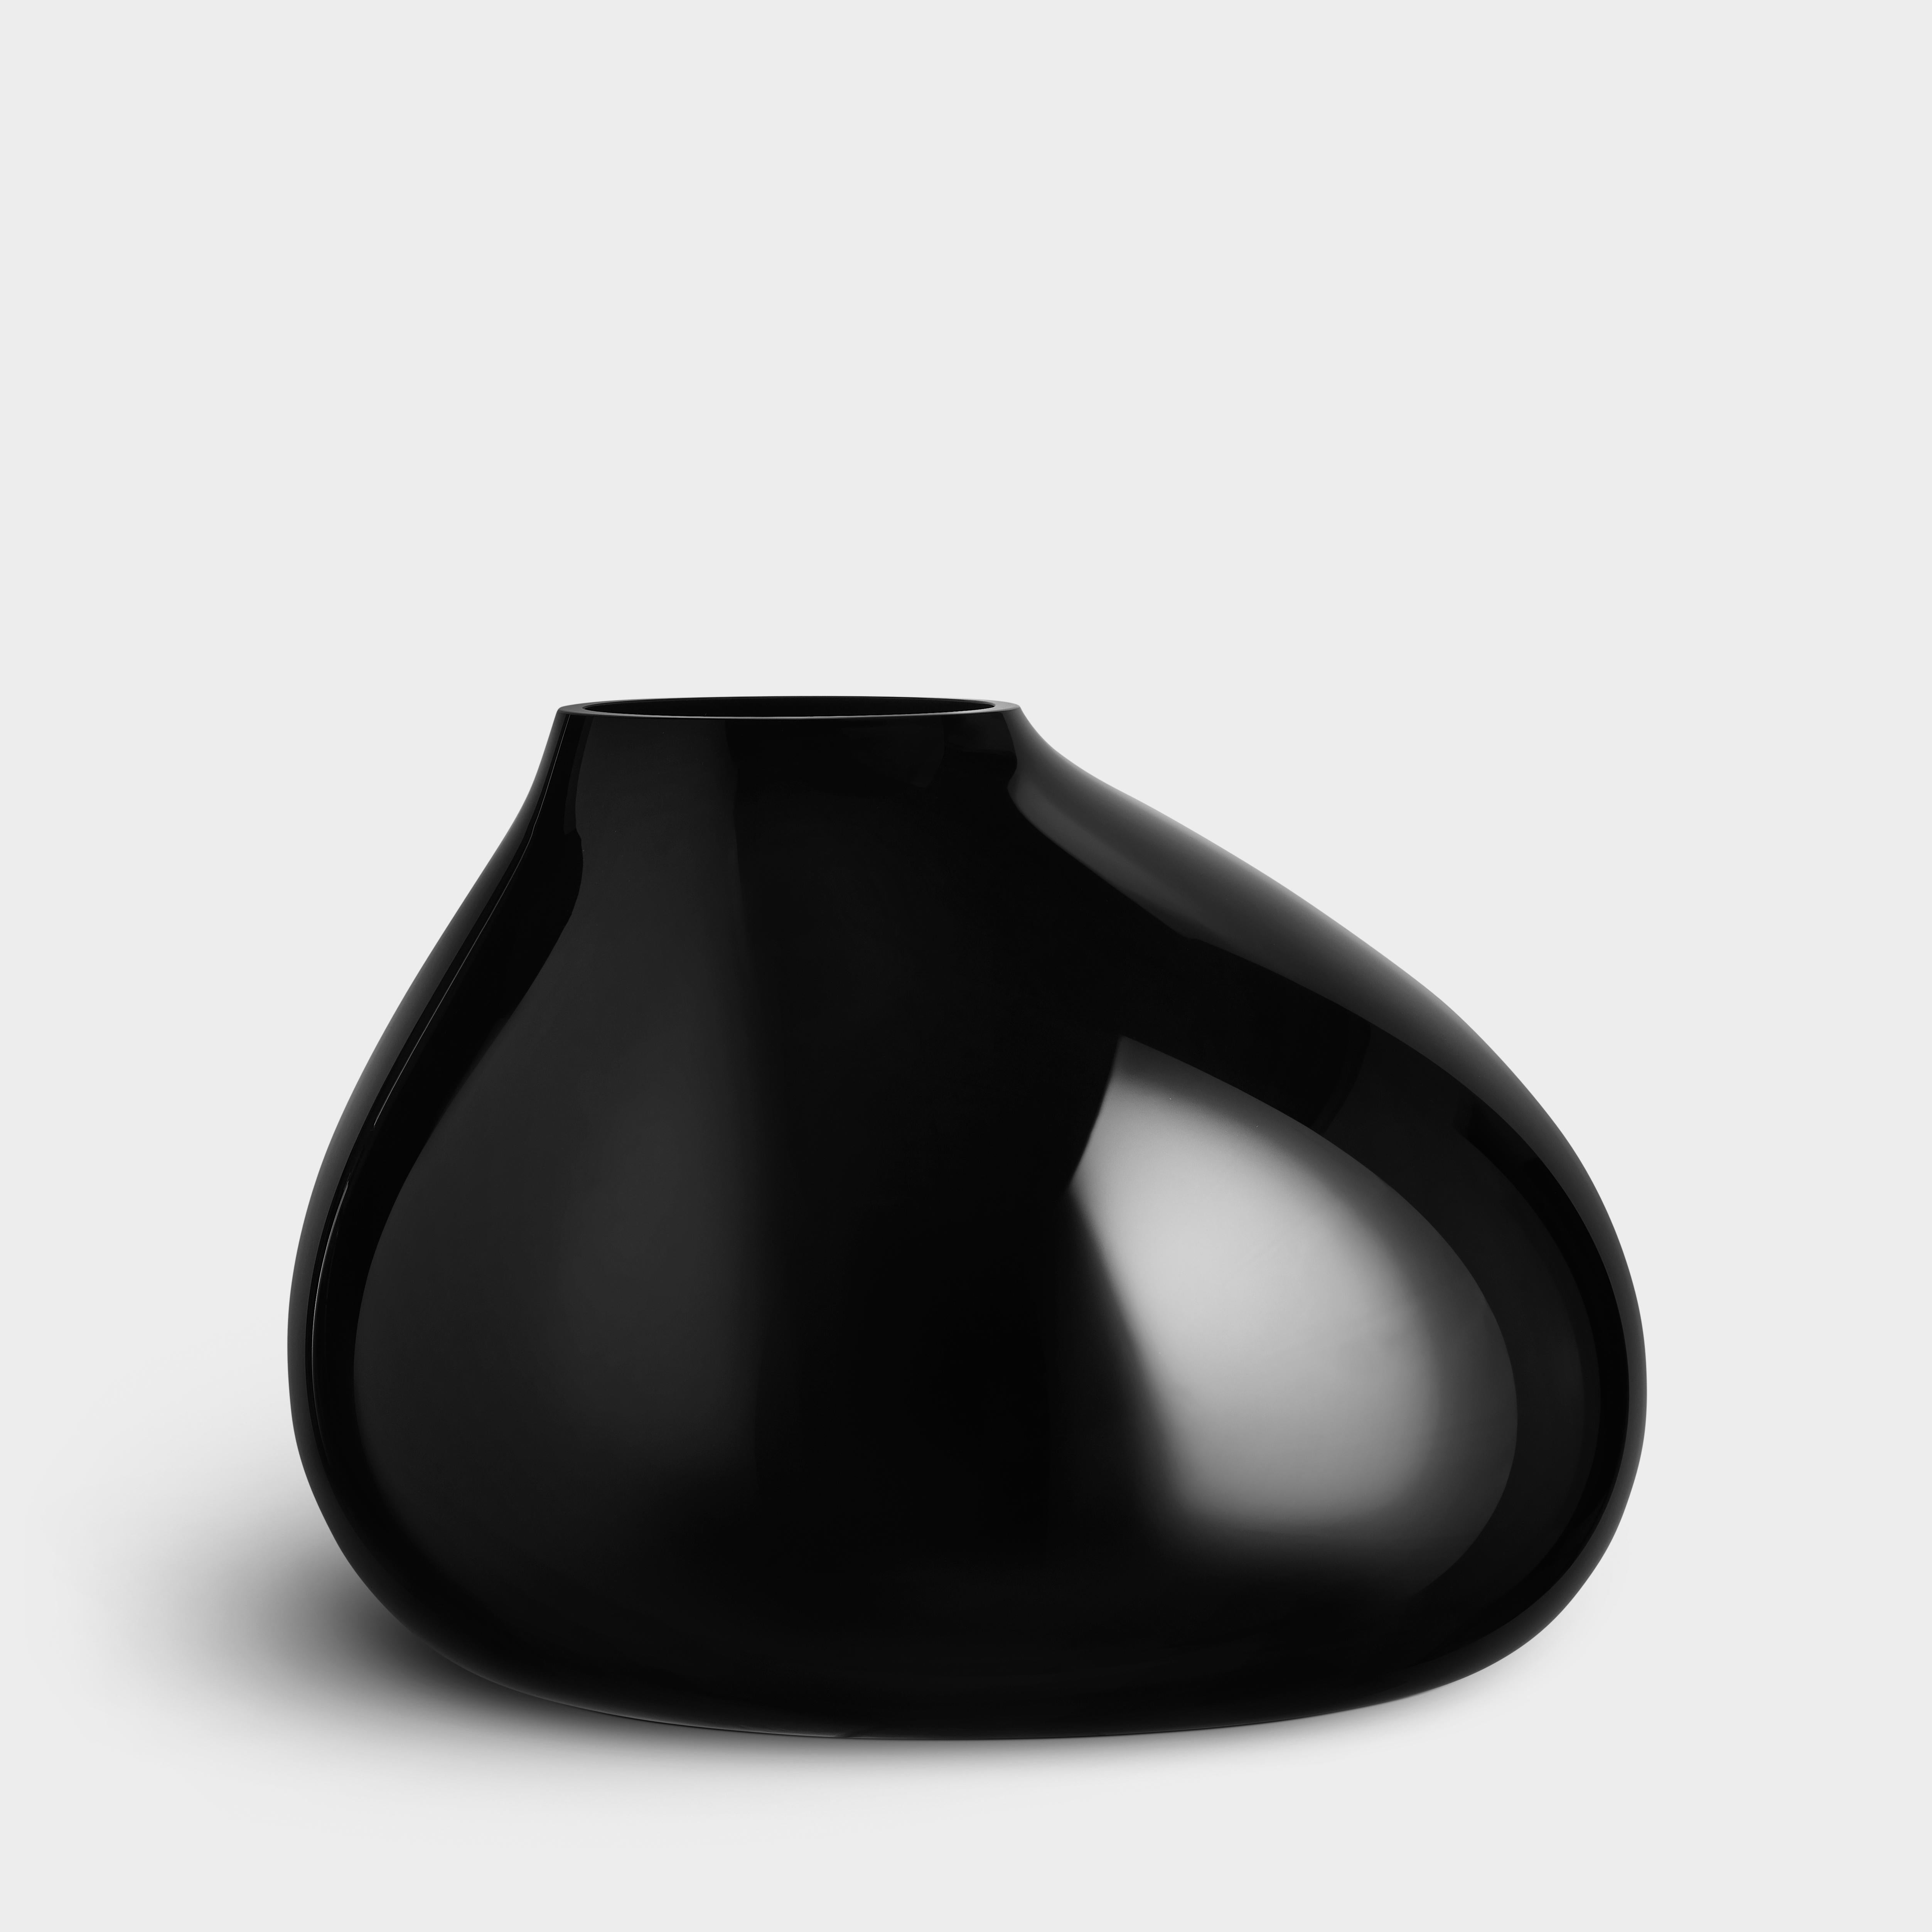 Ebon d'Orrefors est un vase soufflé à la bouche fabriqué en Suède. La forme part d'un gabarit de base, auquel le souffleur de verre apporte la touche finale. Chaque vase est donc fabriqué individuellement dans un cadre strict. L'objet présente une